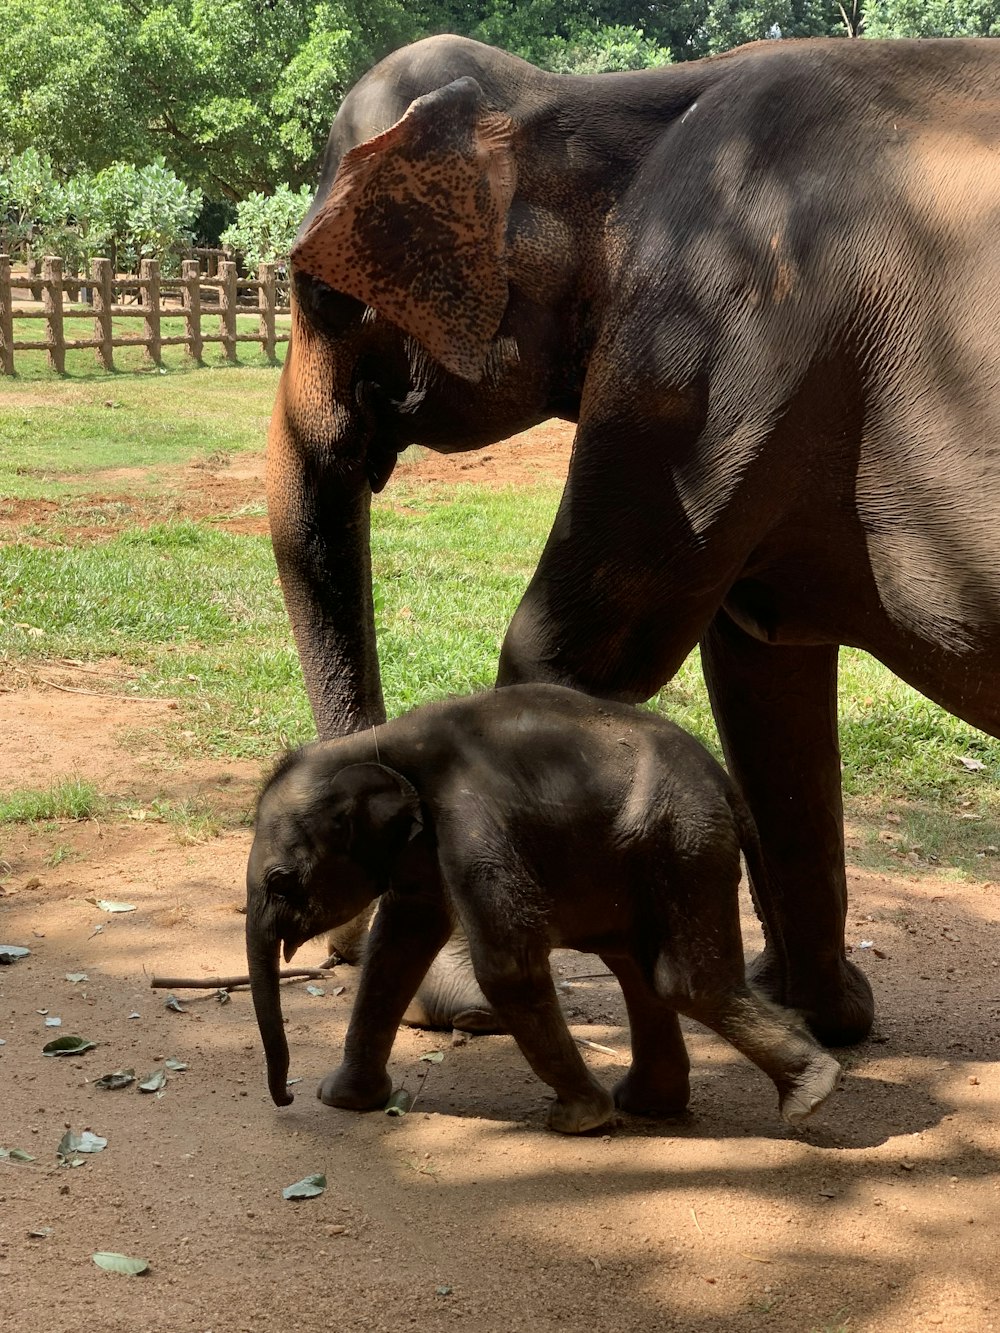 Un elefante bebé caminando junto a un elefante adulto